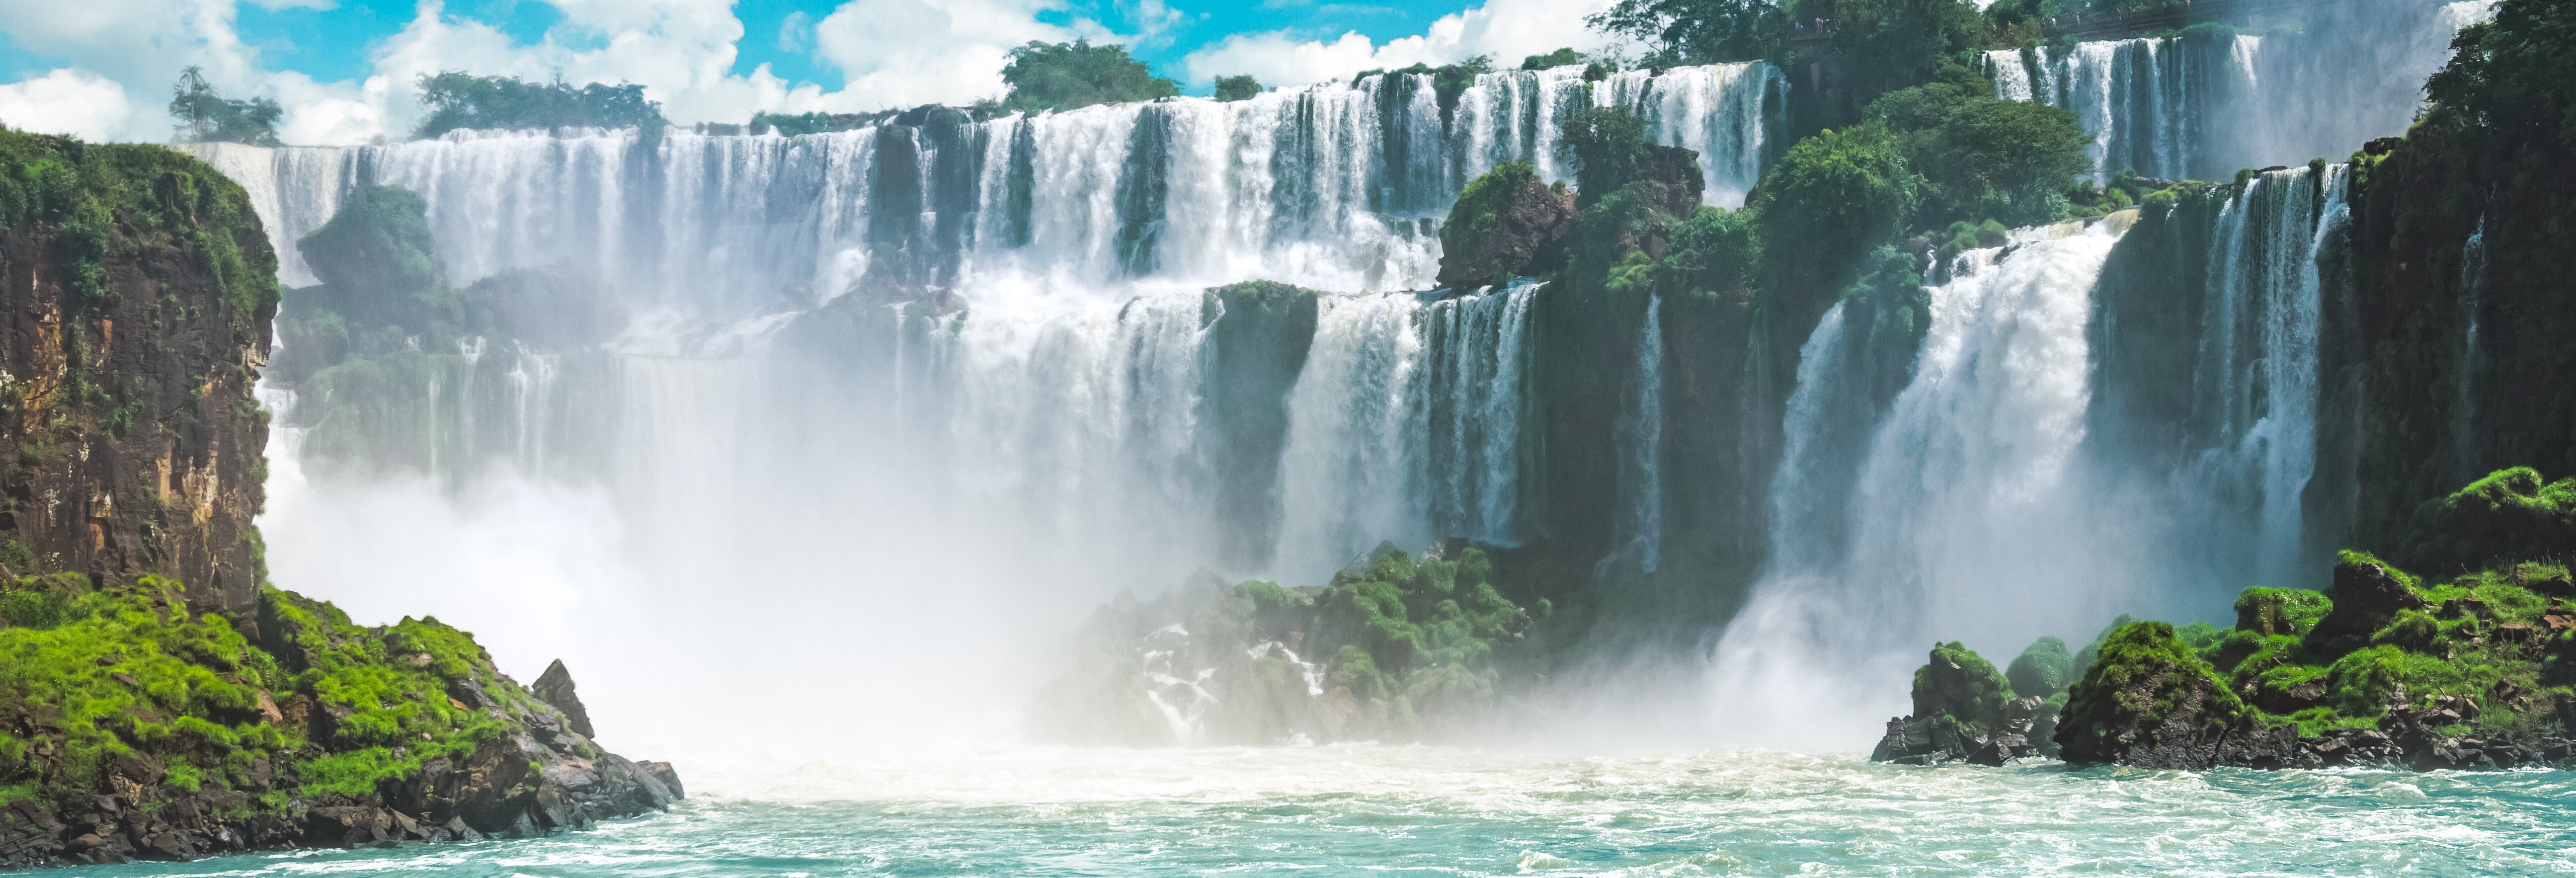 Tour pelo lado brasileiro das Cataratas do Iguaçu